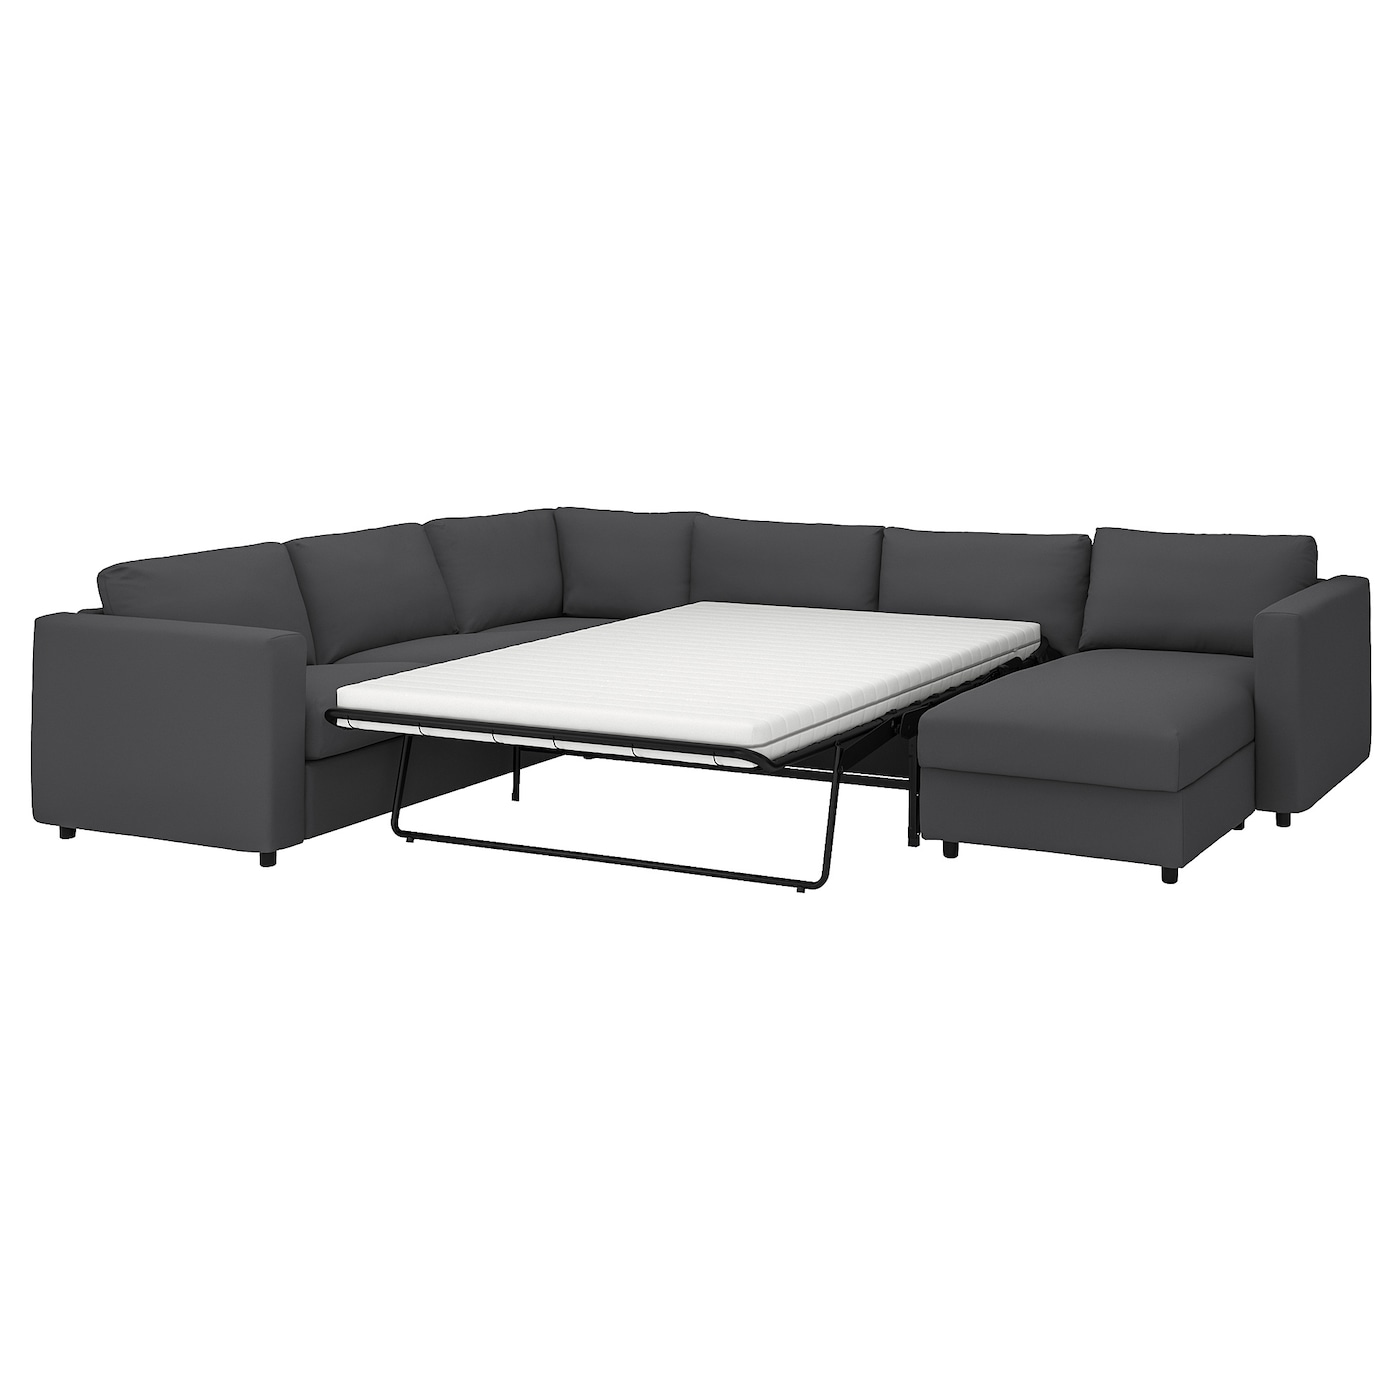 ВИМЛЕ 5-местный, диван-кровать угловой раздел., Халларп серый VIMLE IKEA